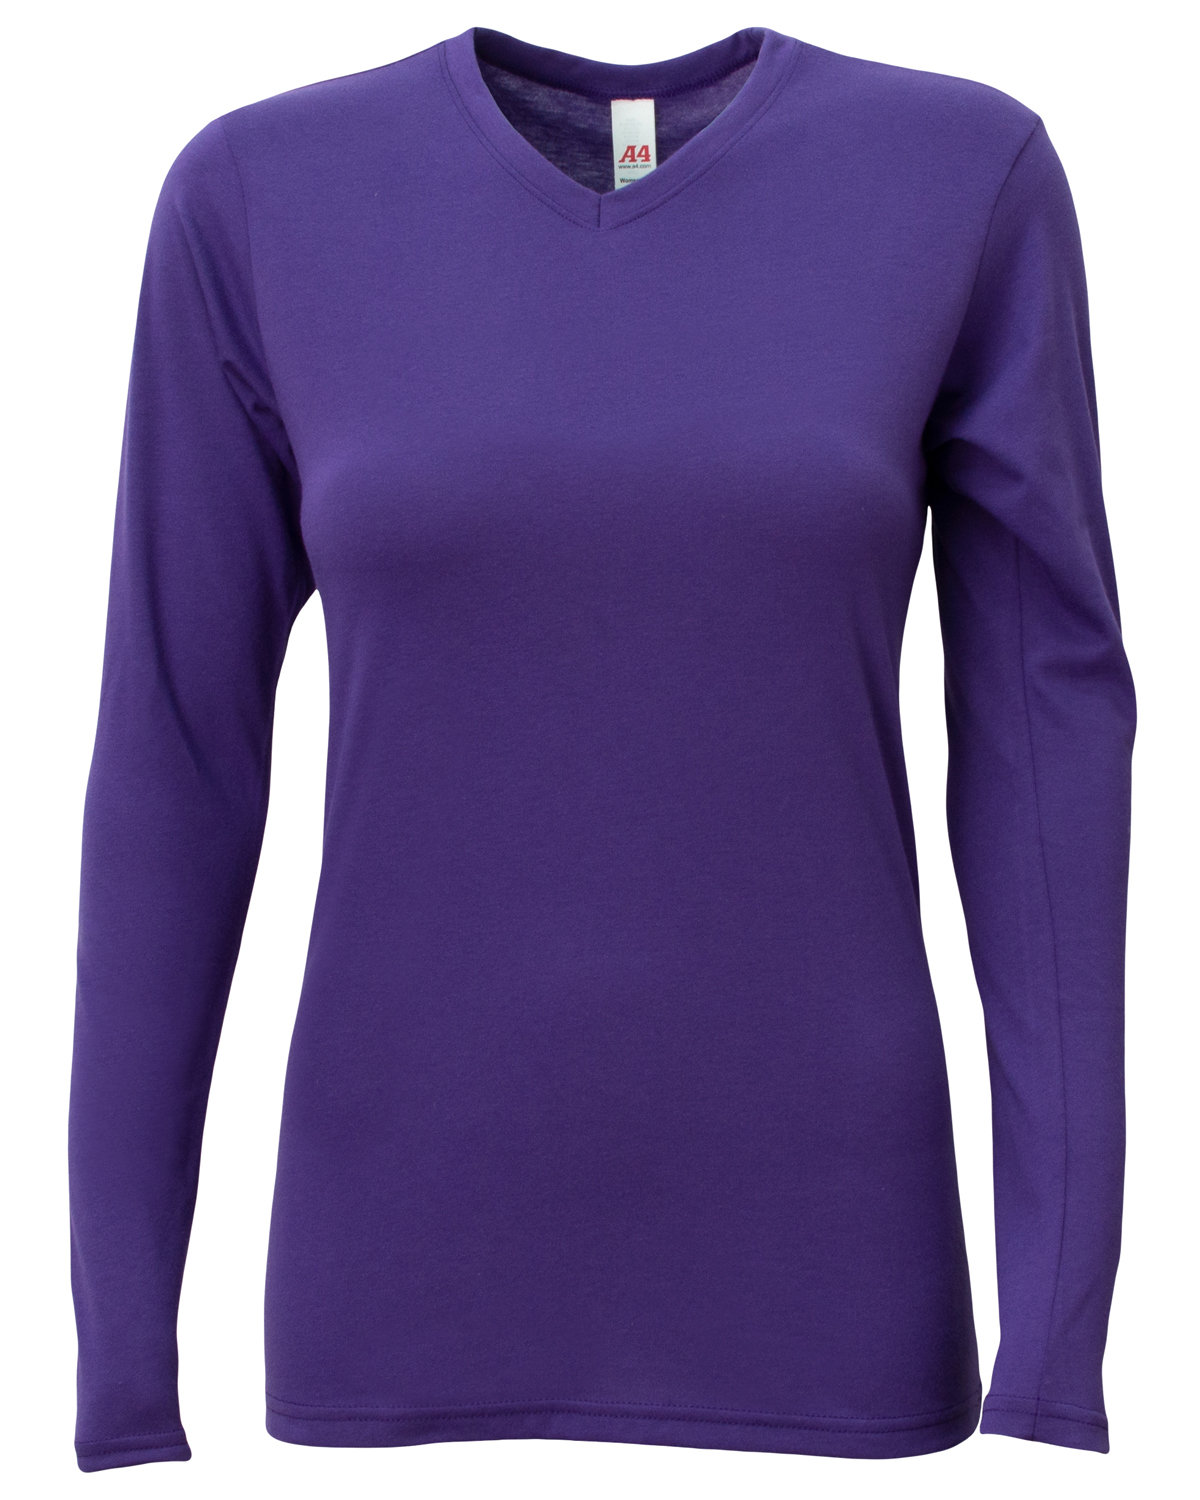 A4 Ladies' Long-Sleeve Softek V-Neck T-Shirt | alphabroder